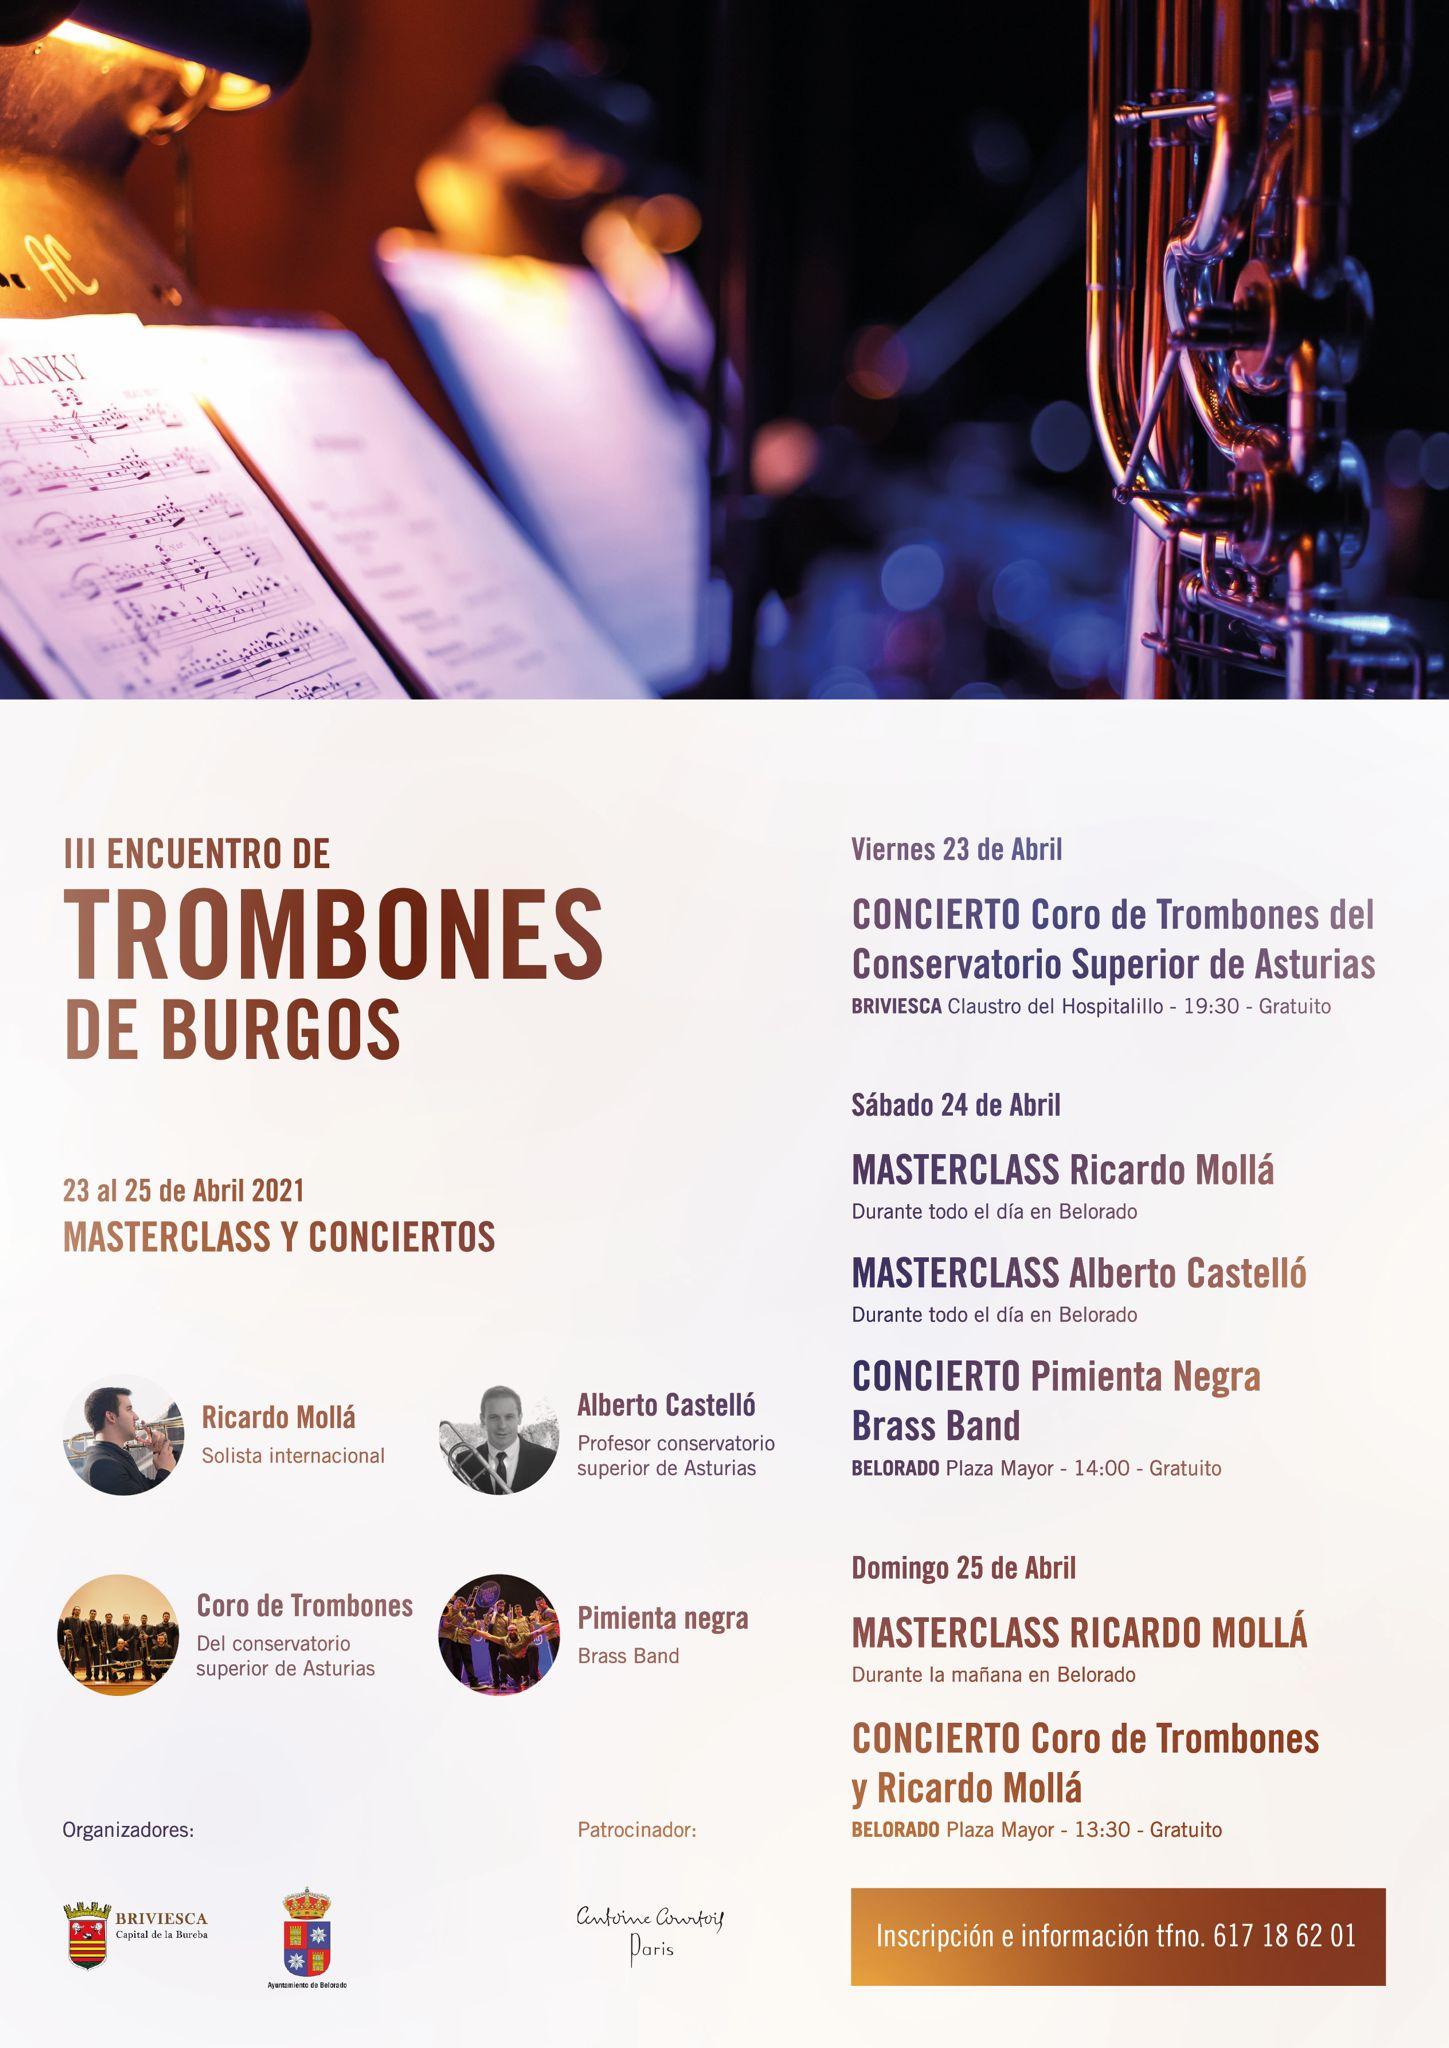 III Encuentro de trombones de Burgos 